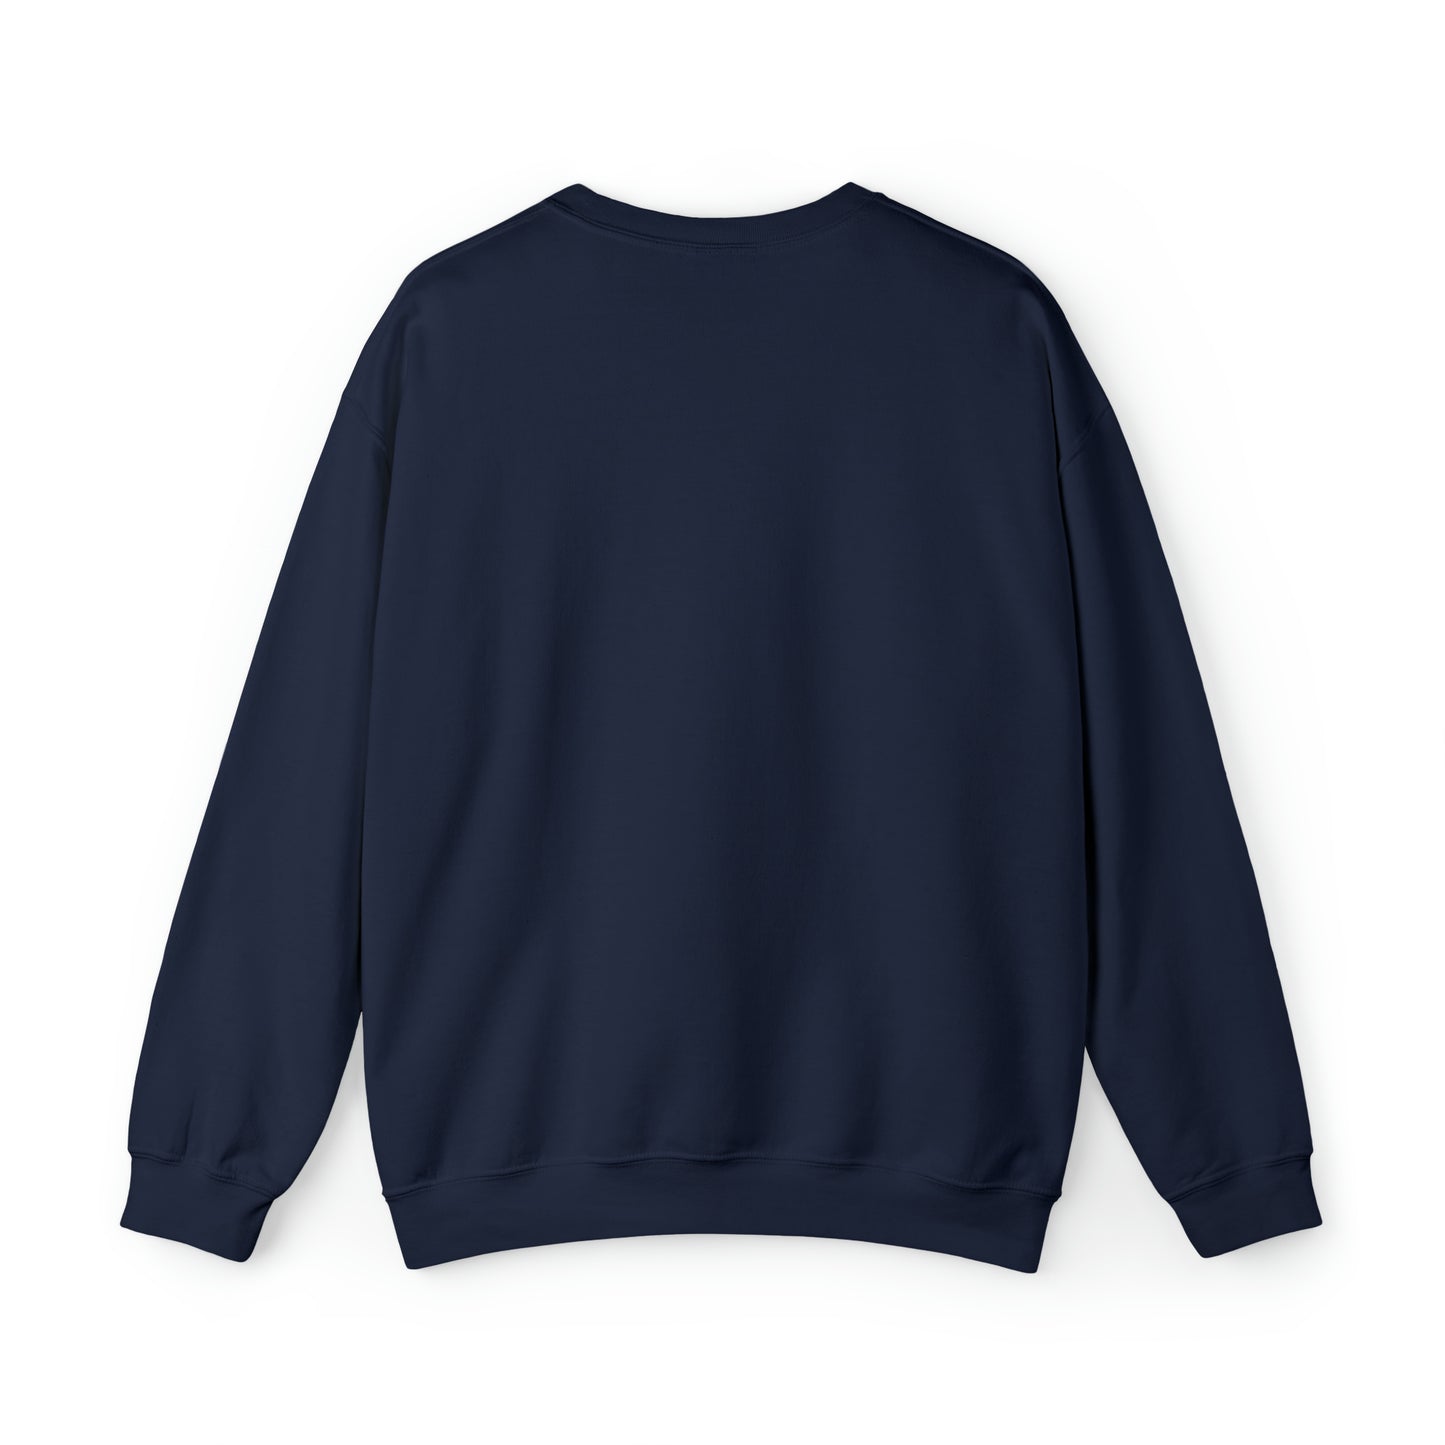 Graphic Sweatshirt, Worldly Woman Crewneck Sweatshirt, Streetwear Aesthetic